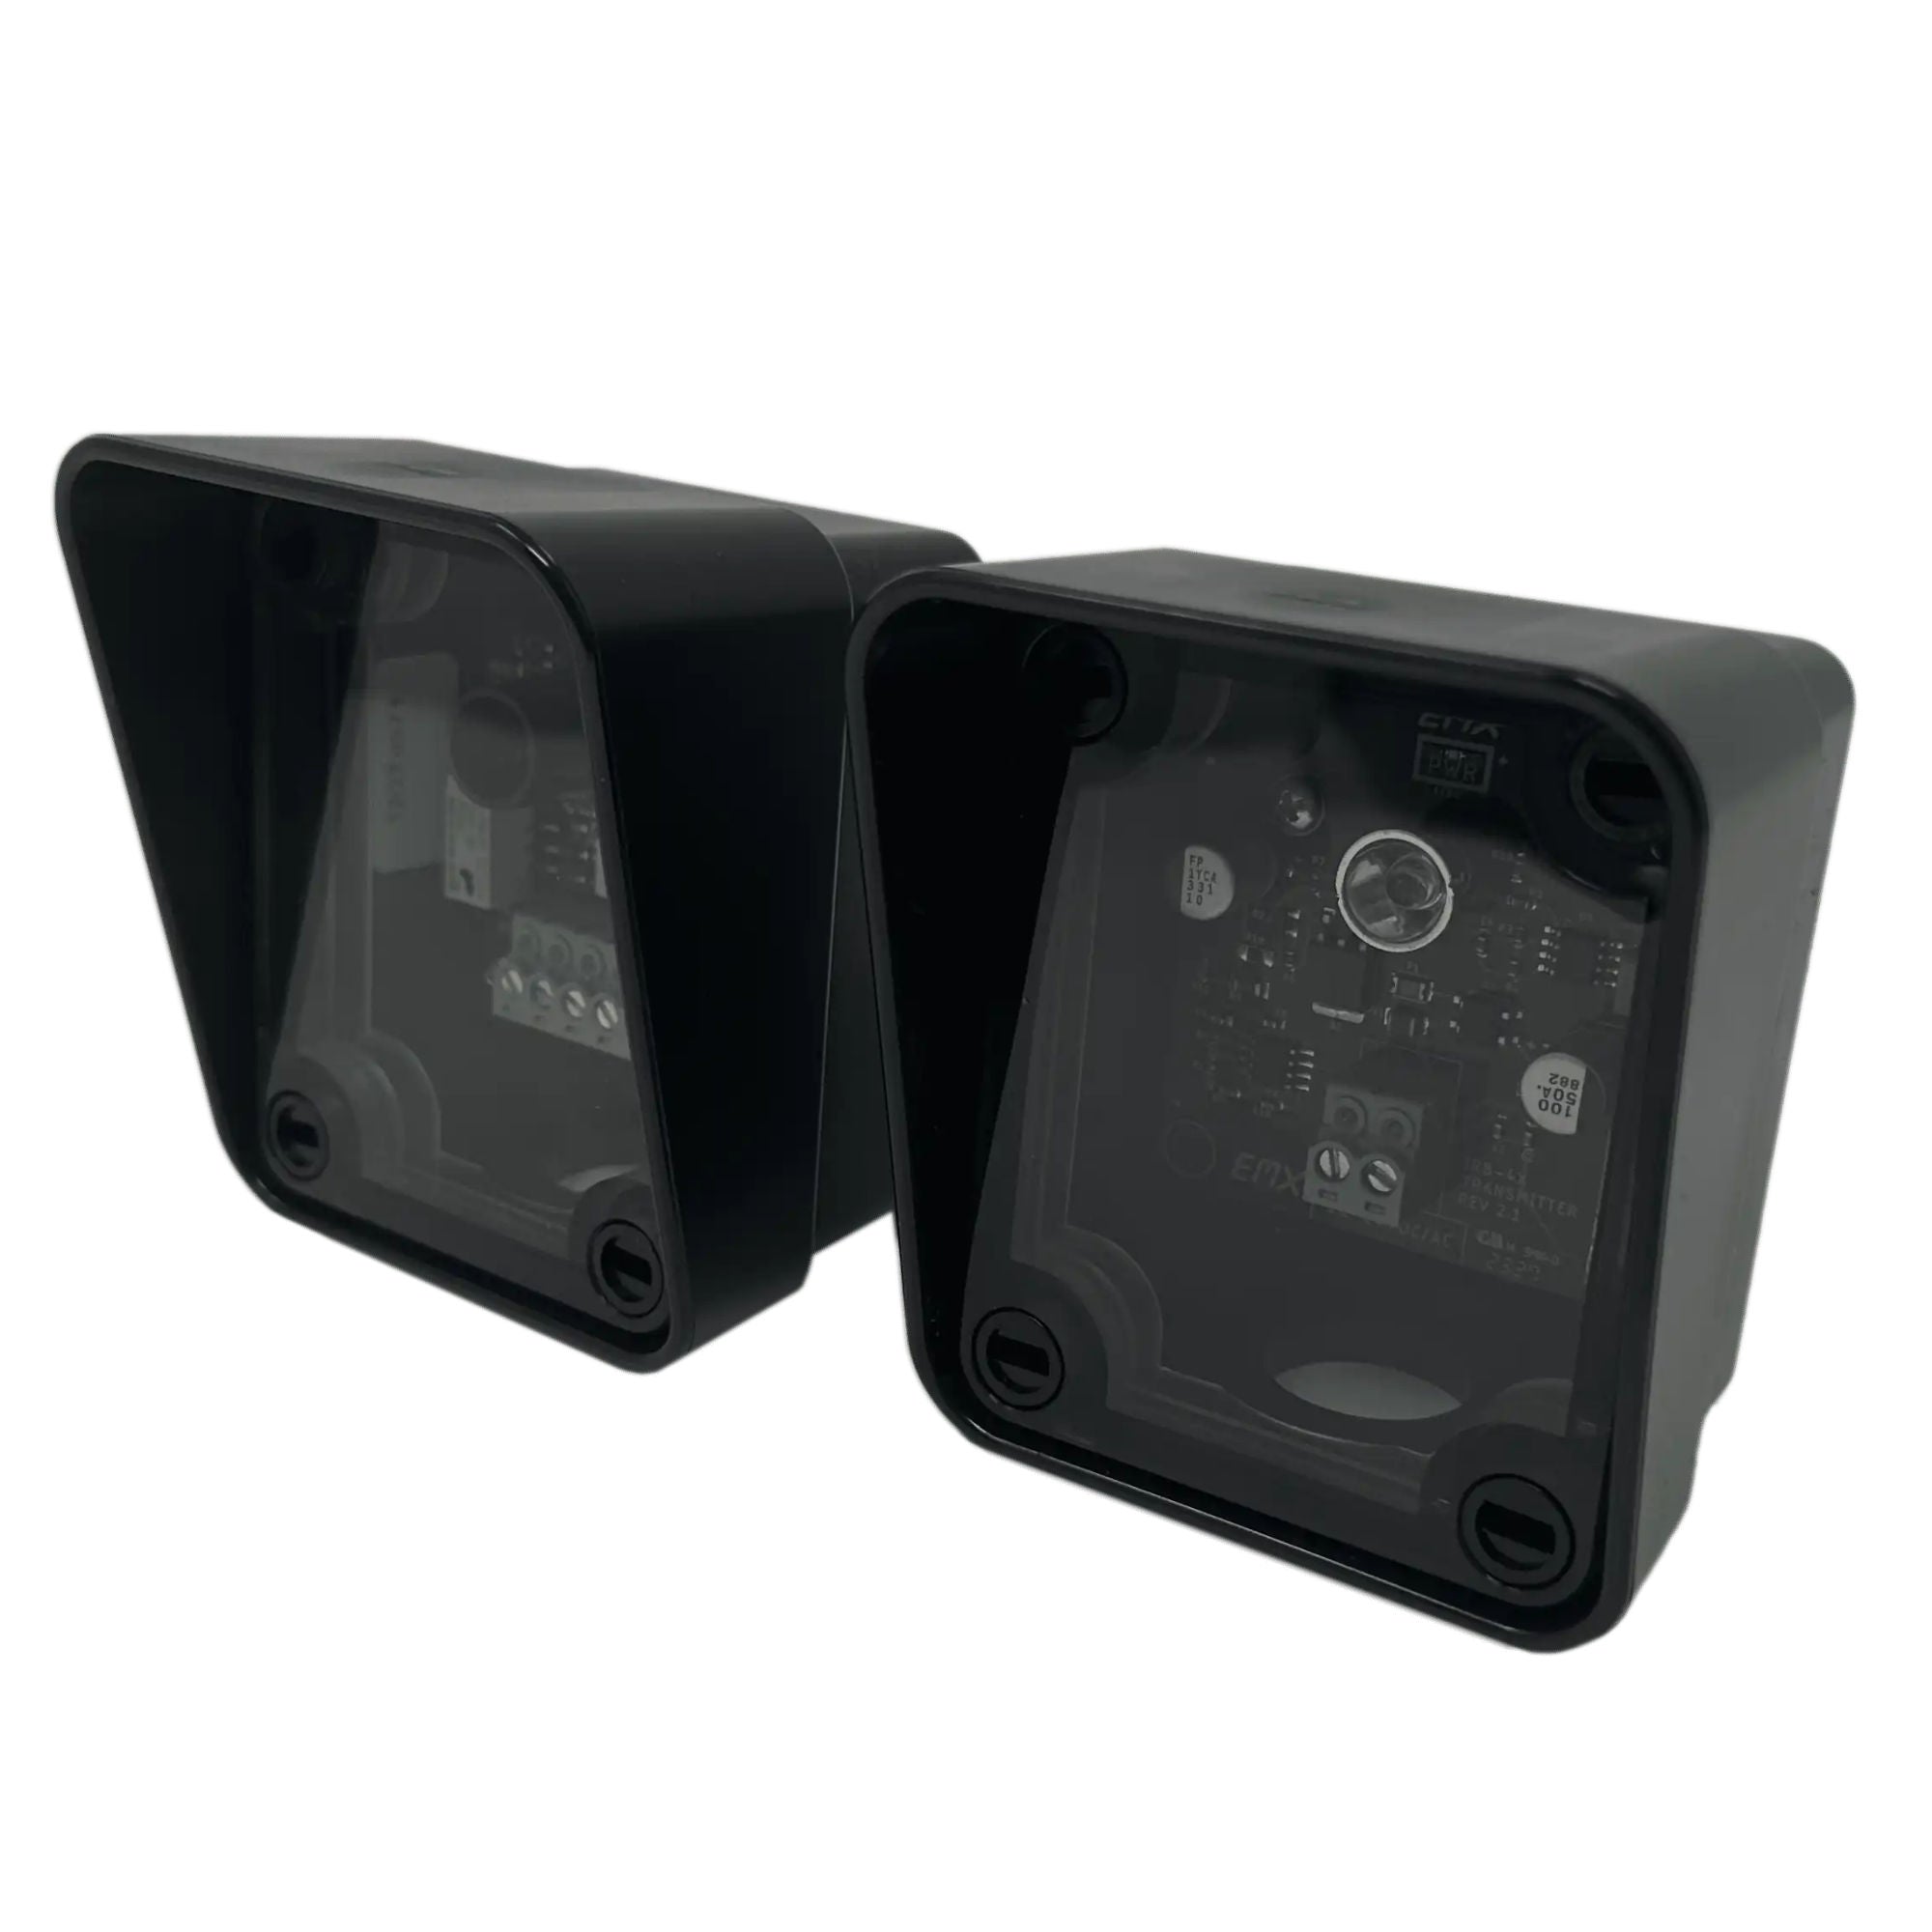 Sensores de seguridad de fotocélula infrarrojos EMX IRB-4X con cubiertas (gris)